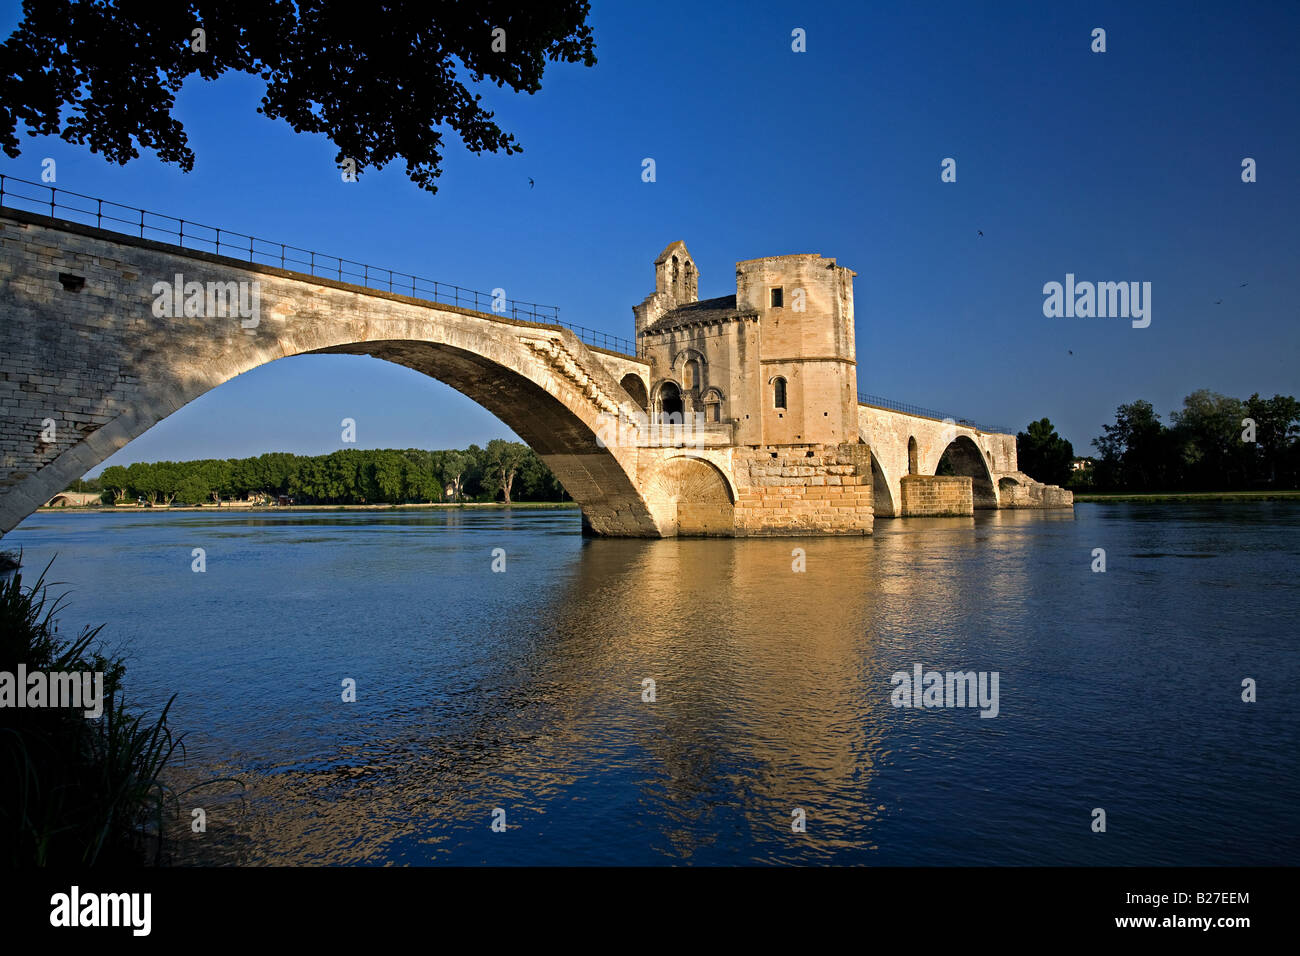 Pont von D'Avignon eine mittelalterliche Brücke über den Fluss Rhone, Avignon, Provence, Frankreich. Stockfoto